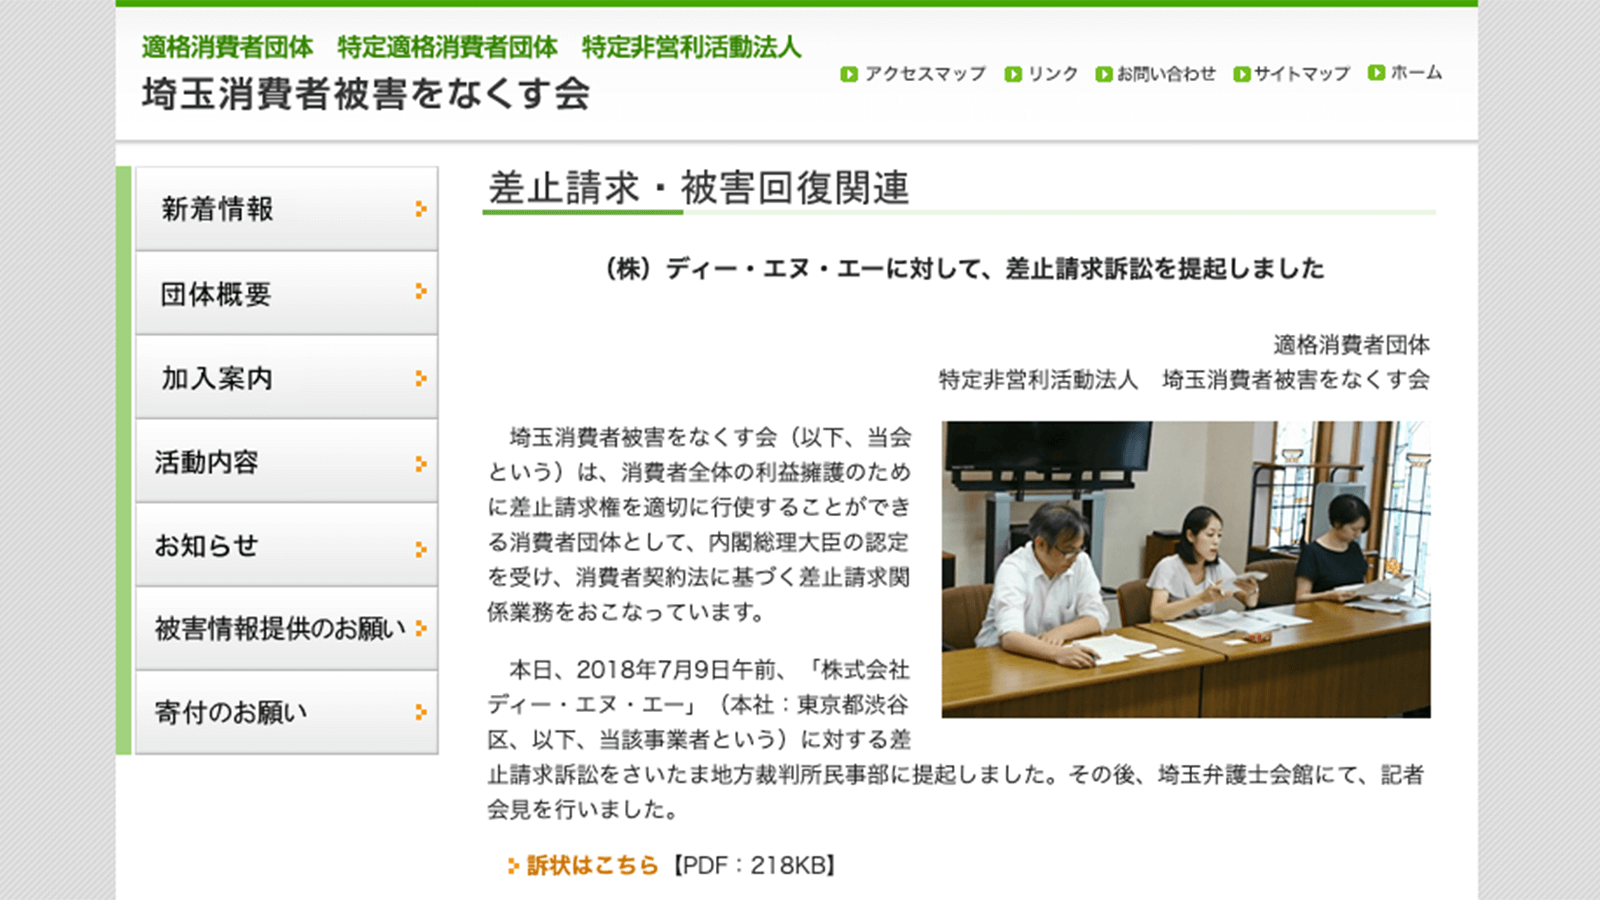 http://saitama-higainakusukai.or.jp/topics/180709_01.html 適格消費者団体 埼玉消費者被害をなくす会 2021年1月8日最終アクセス